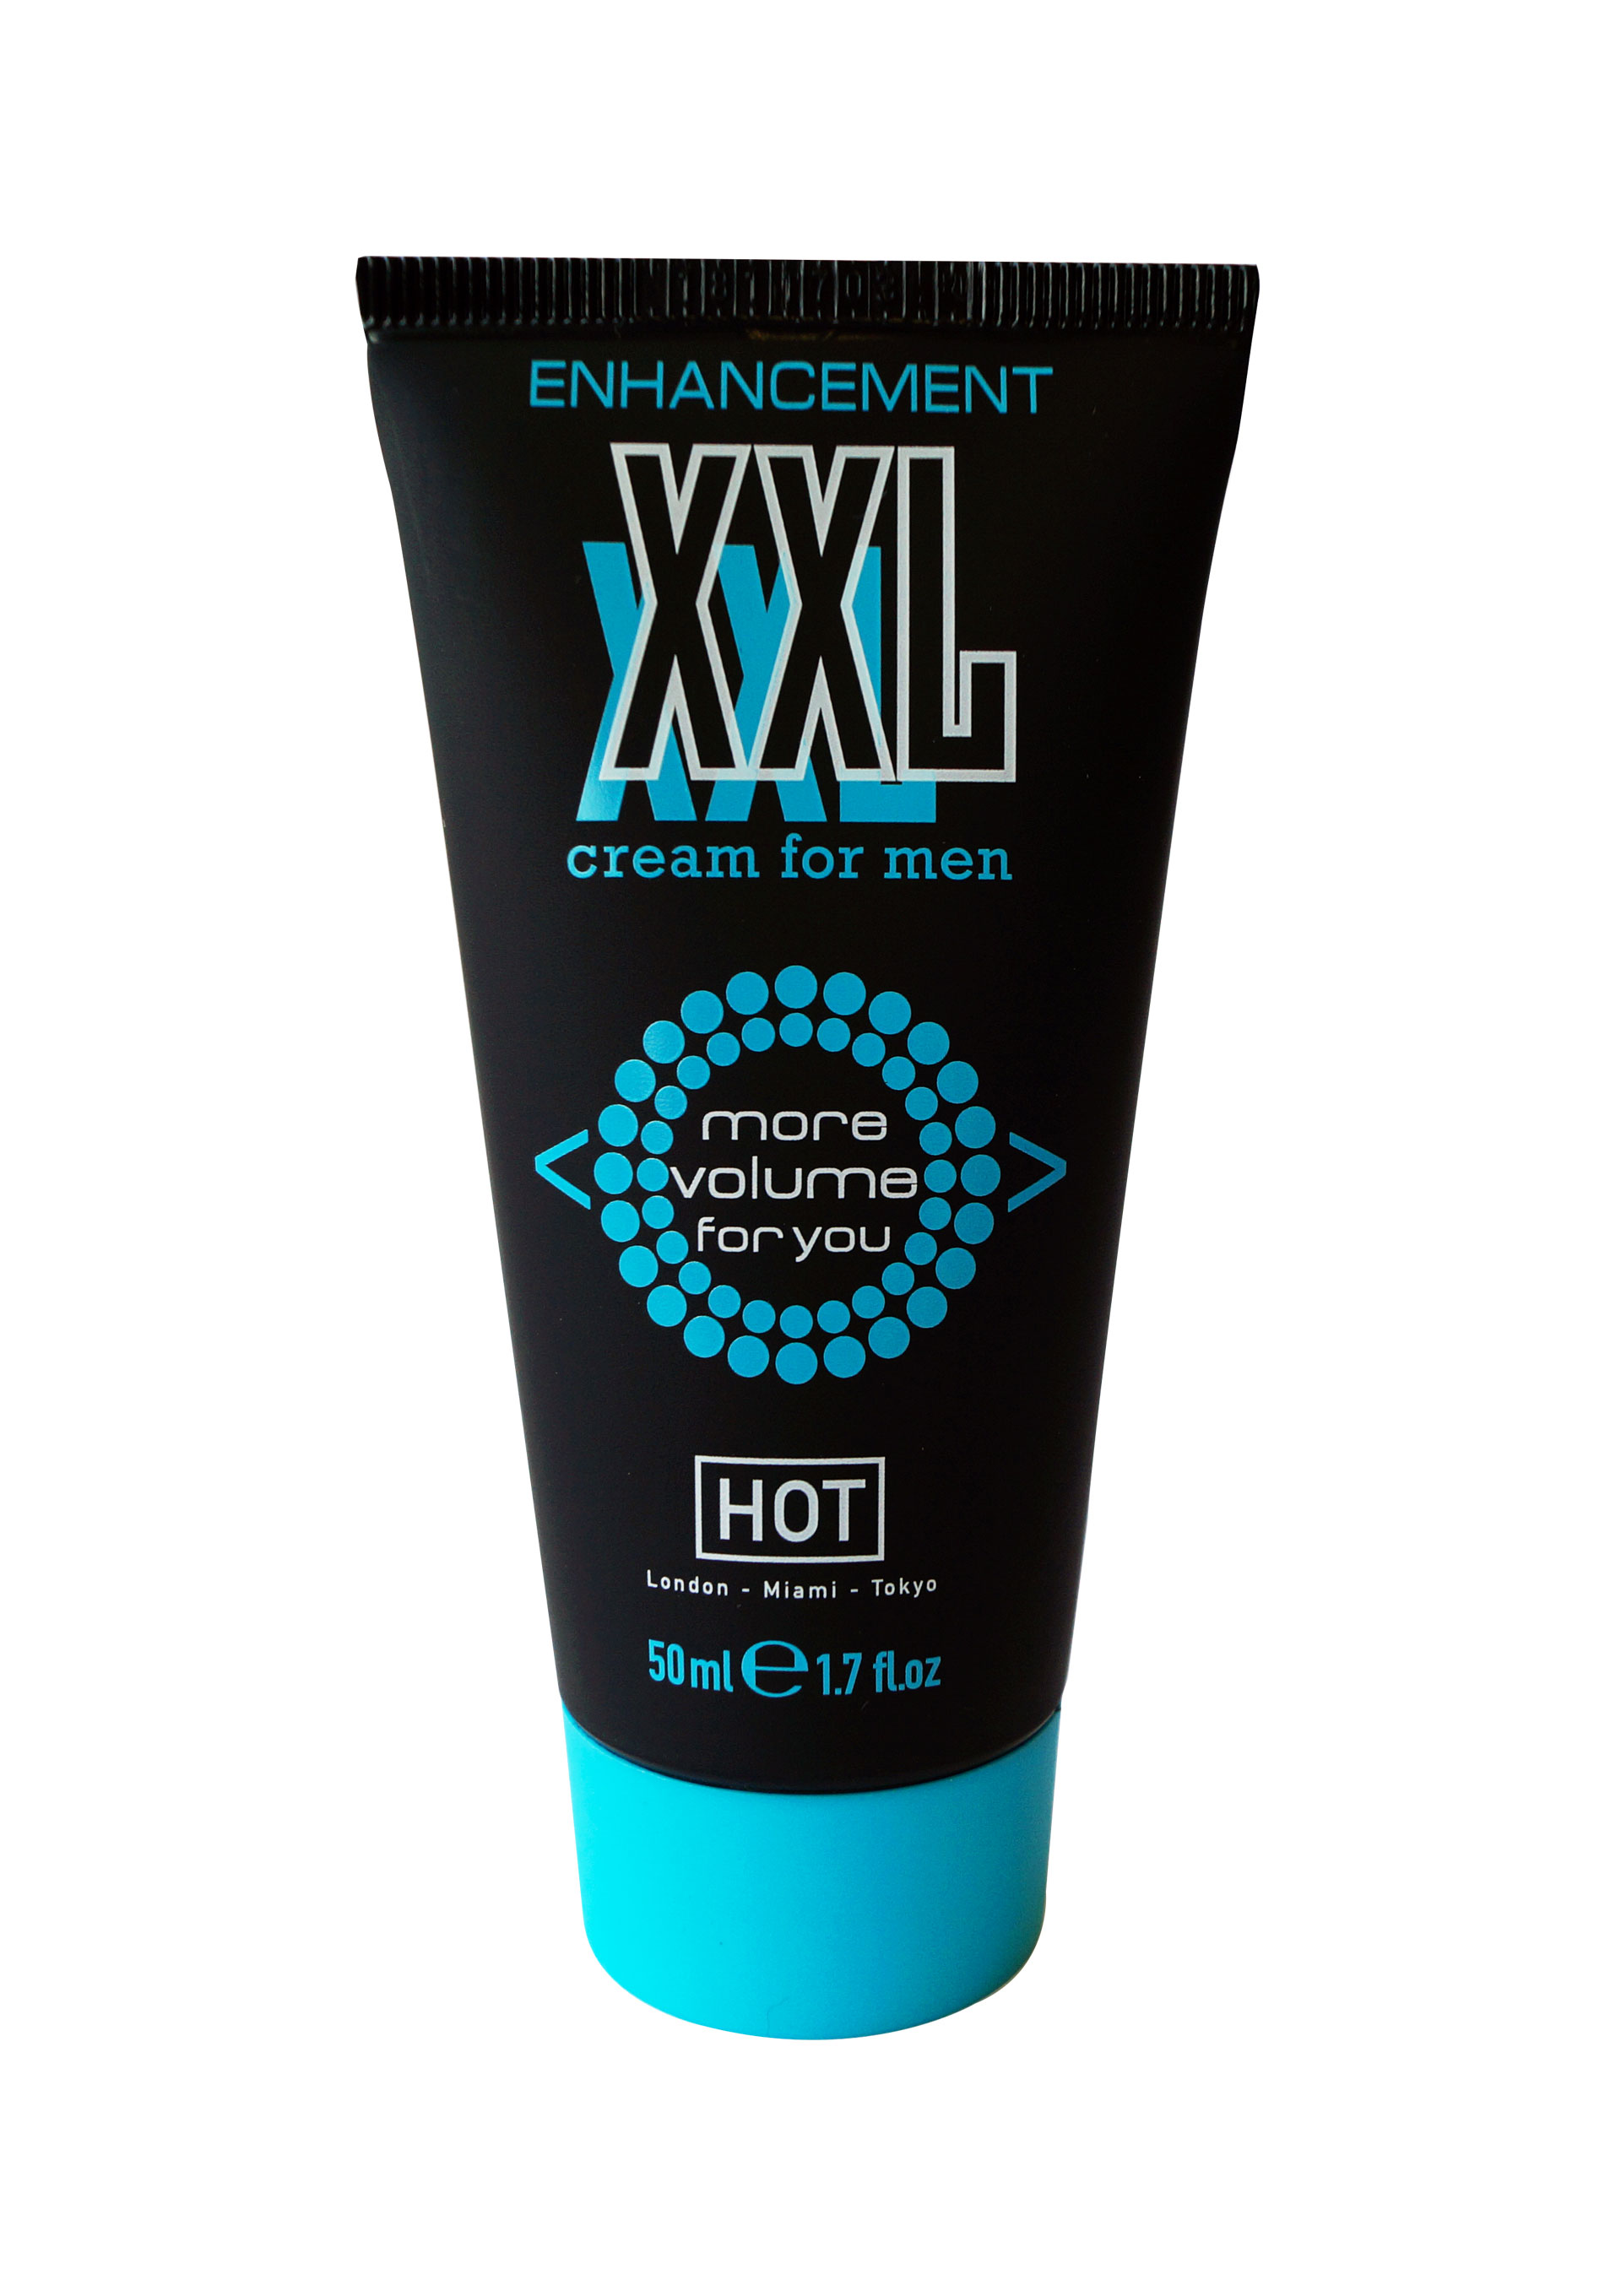 HOT enhancement XXL Cream for men 50ml.